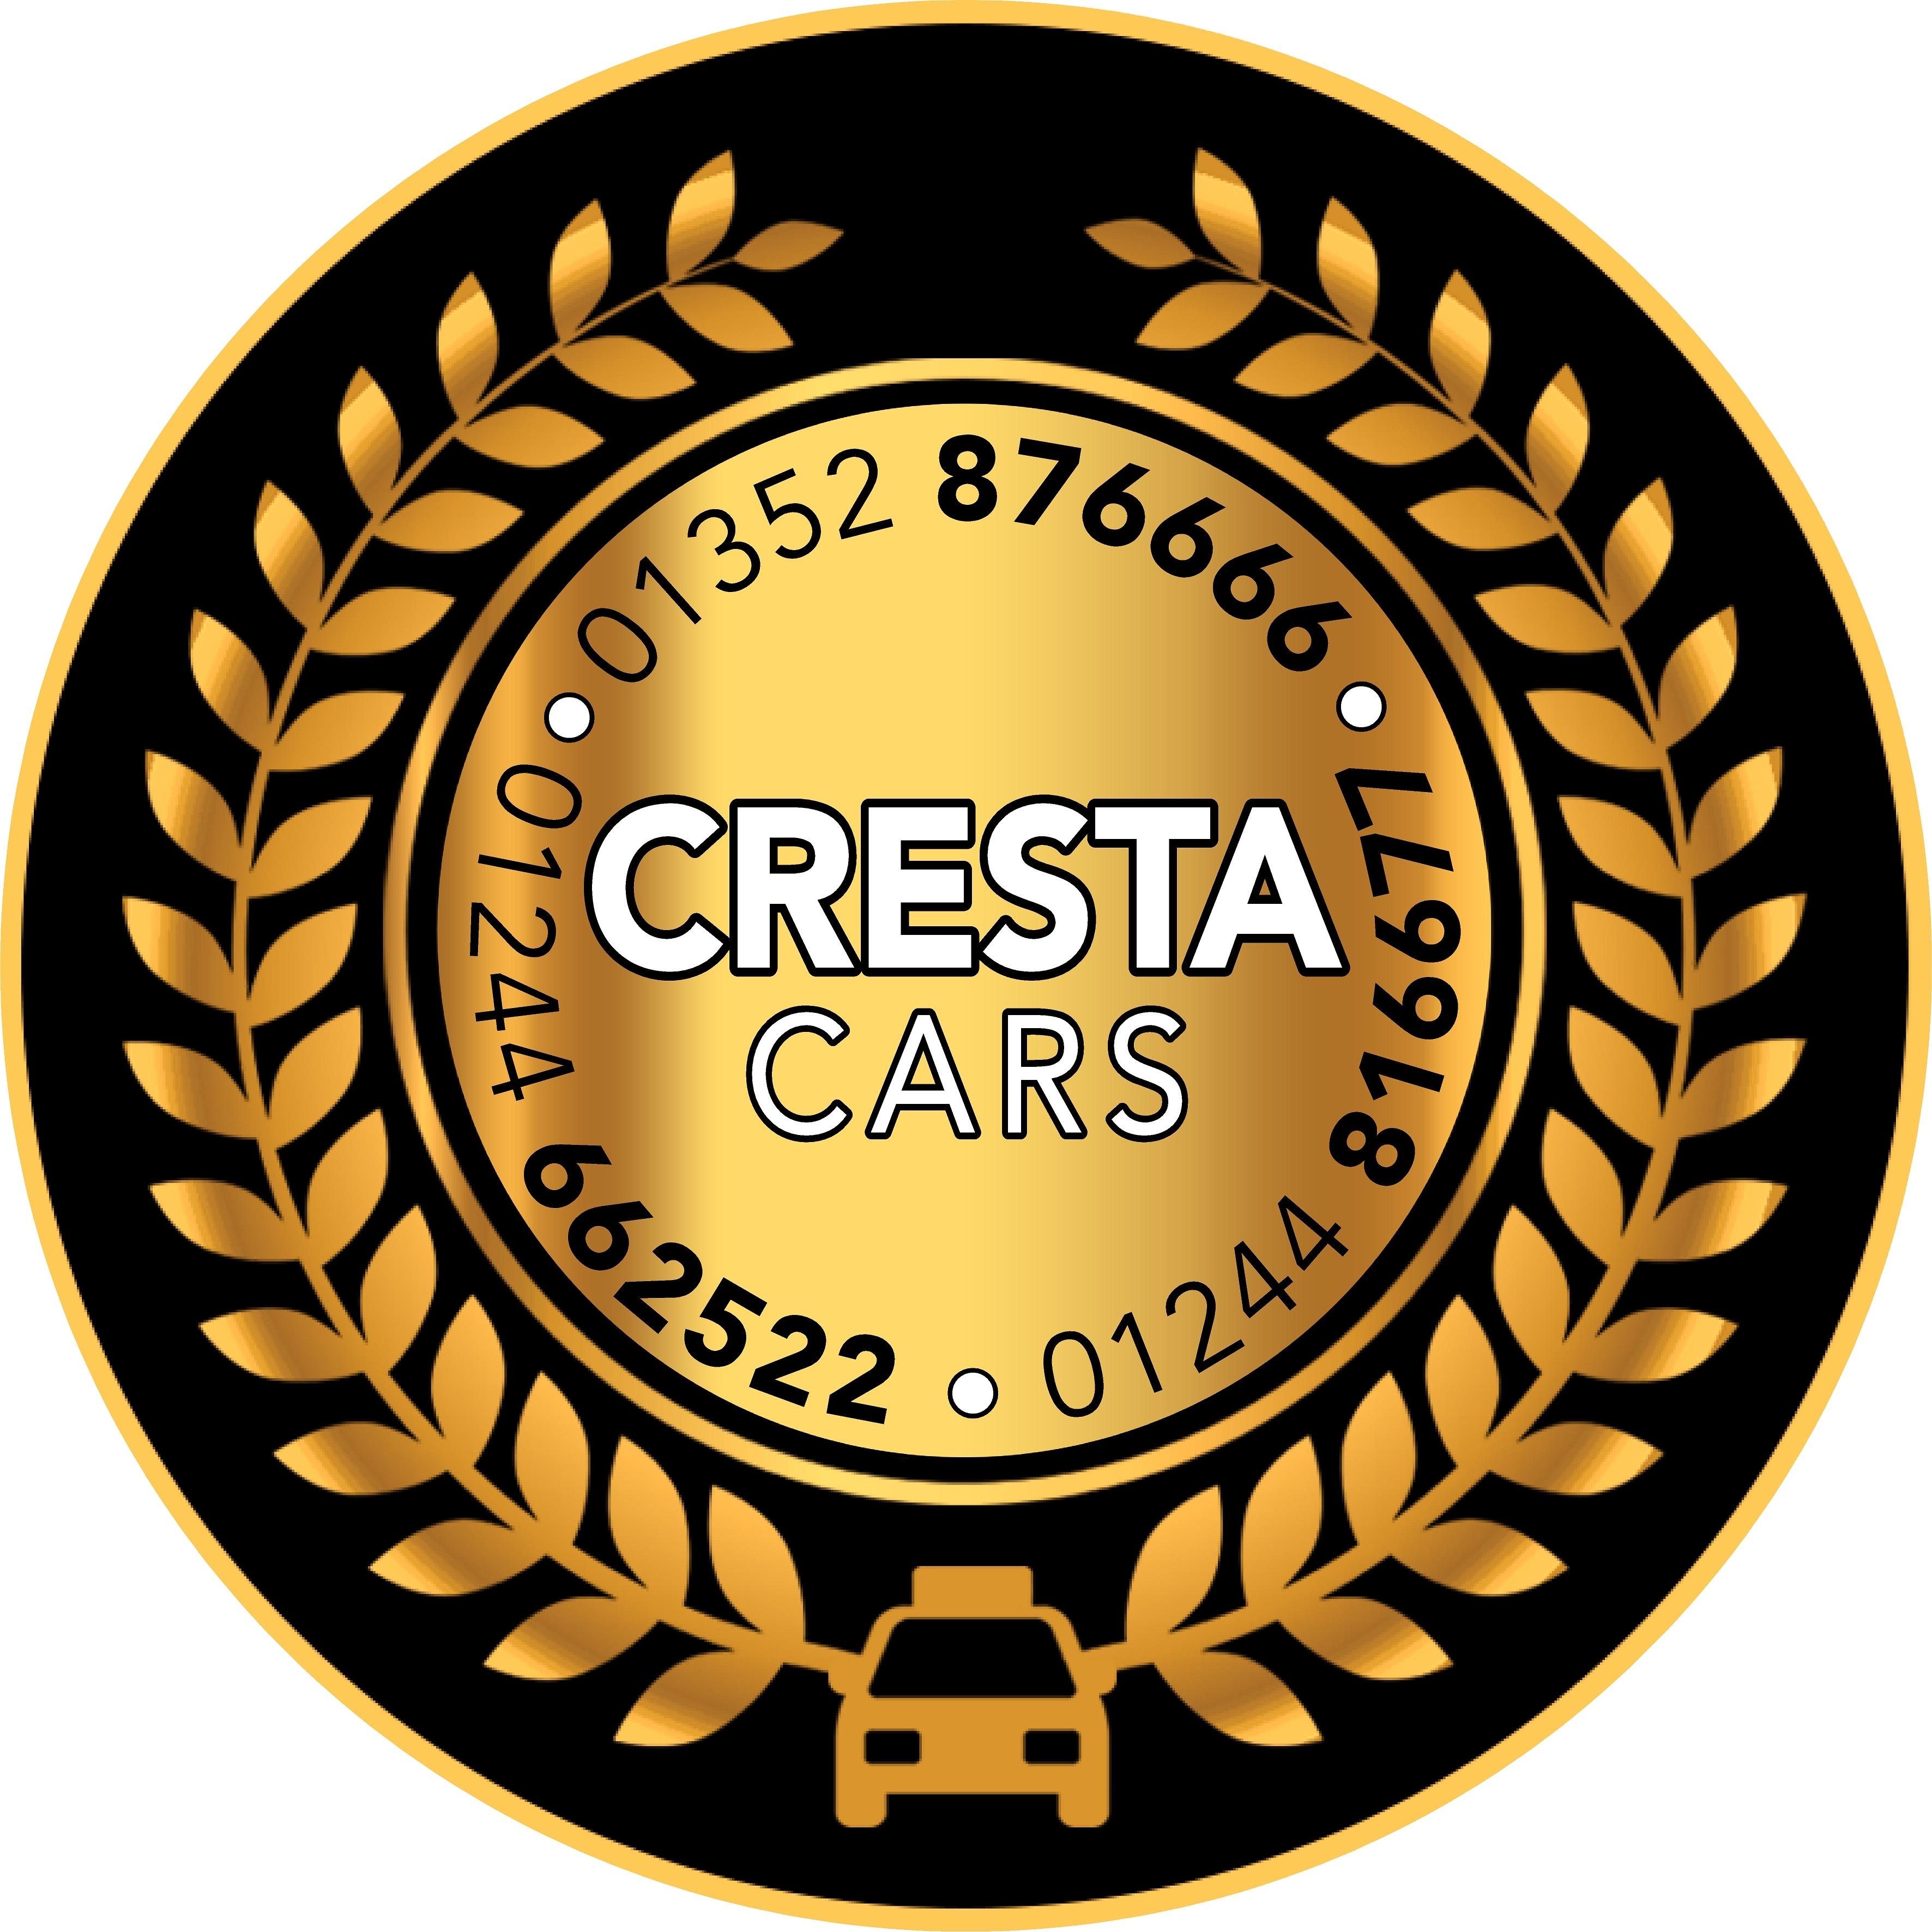 Cresta Taxis Deeside Logo